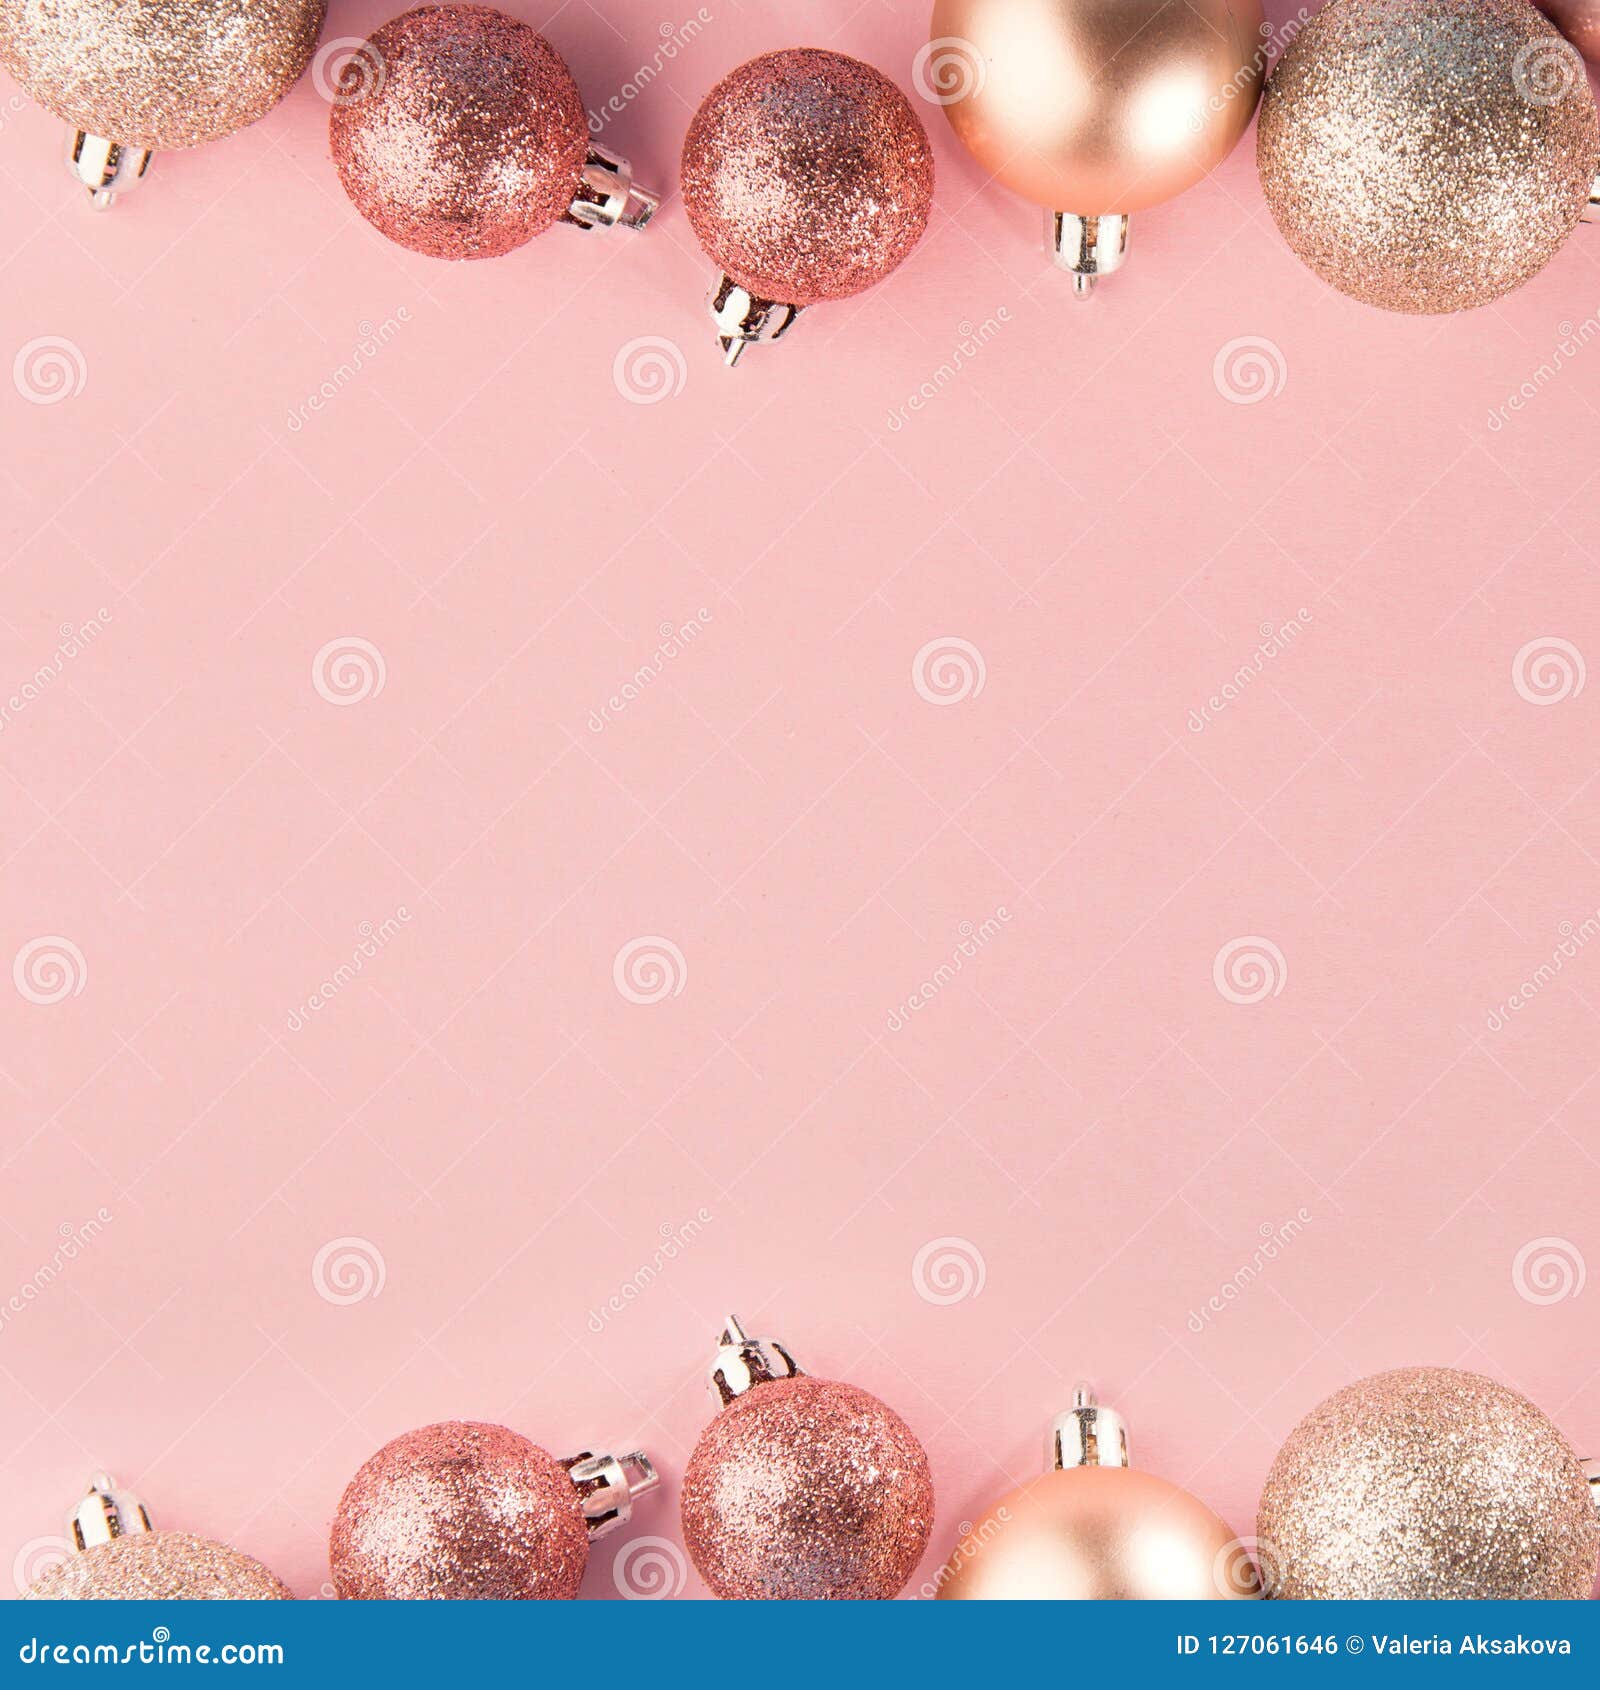 Hình ảnh nền Giáng sinh màu hồng sẽ đưa bạn vào một không gian tràn ngập yêu thương và đong đầy niềm vui. Những gam màu pastel tươi tắn, những chiếc nơ xinh xắn sẽ khiến bạn không thể rời mắt khỏi bức tranh Giáng sinh tuyệt đẹp này.